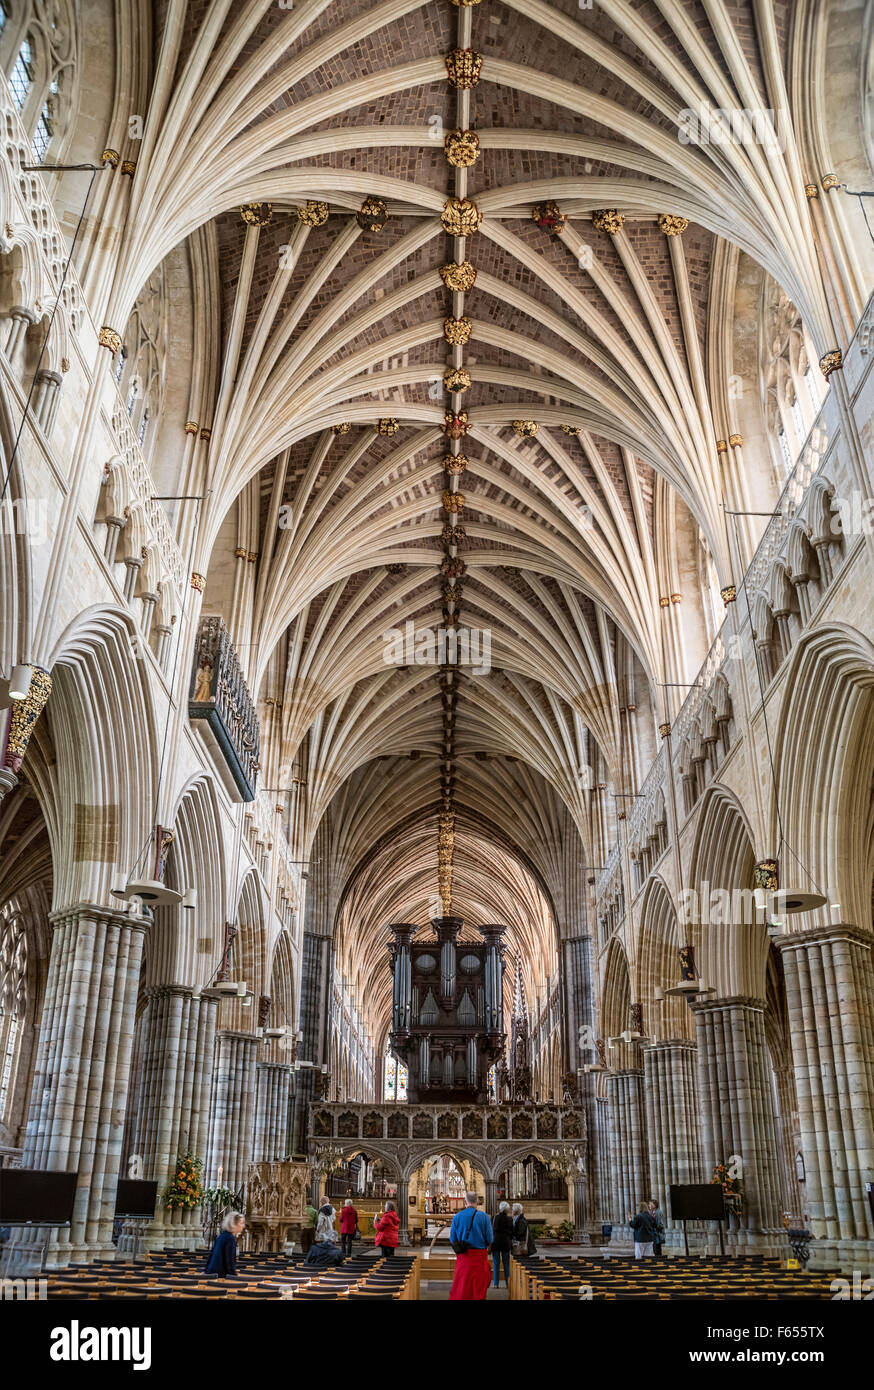 Intérieur et de l'orgue de cathédrale d'Exeter, Devon, England, UK Banque D'Images